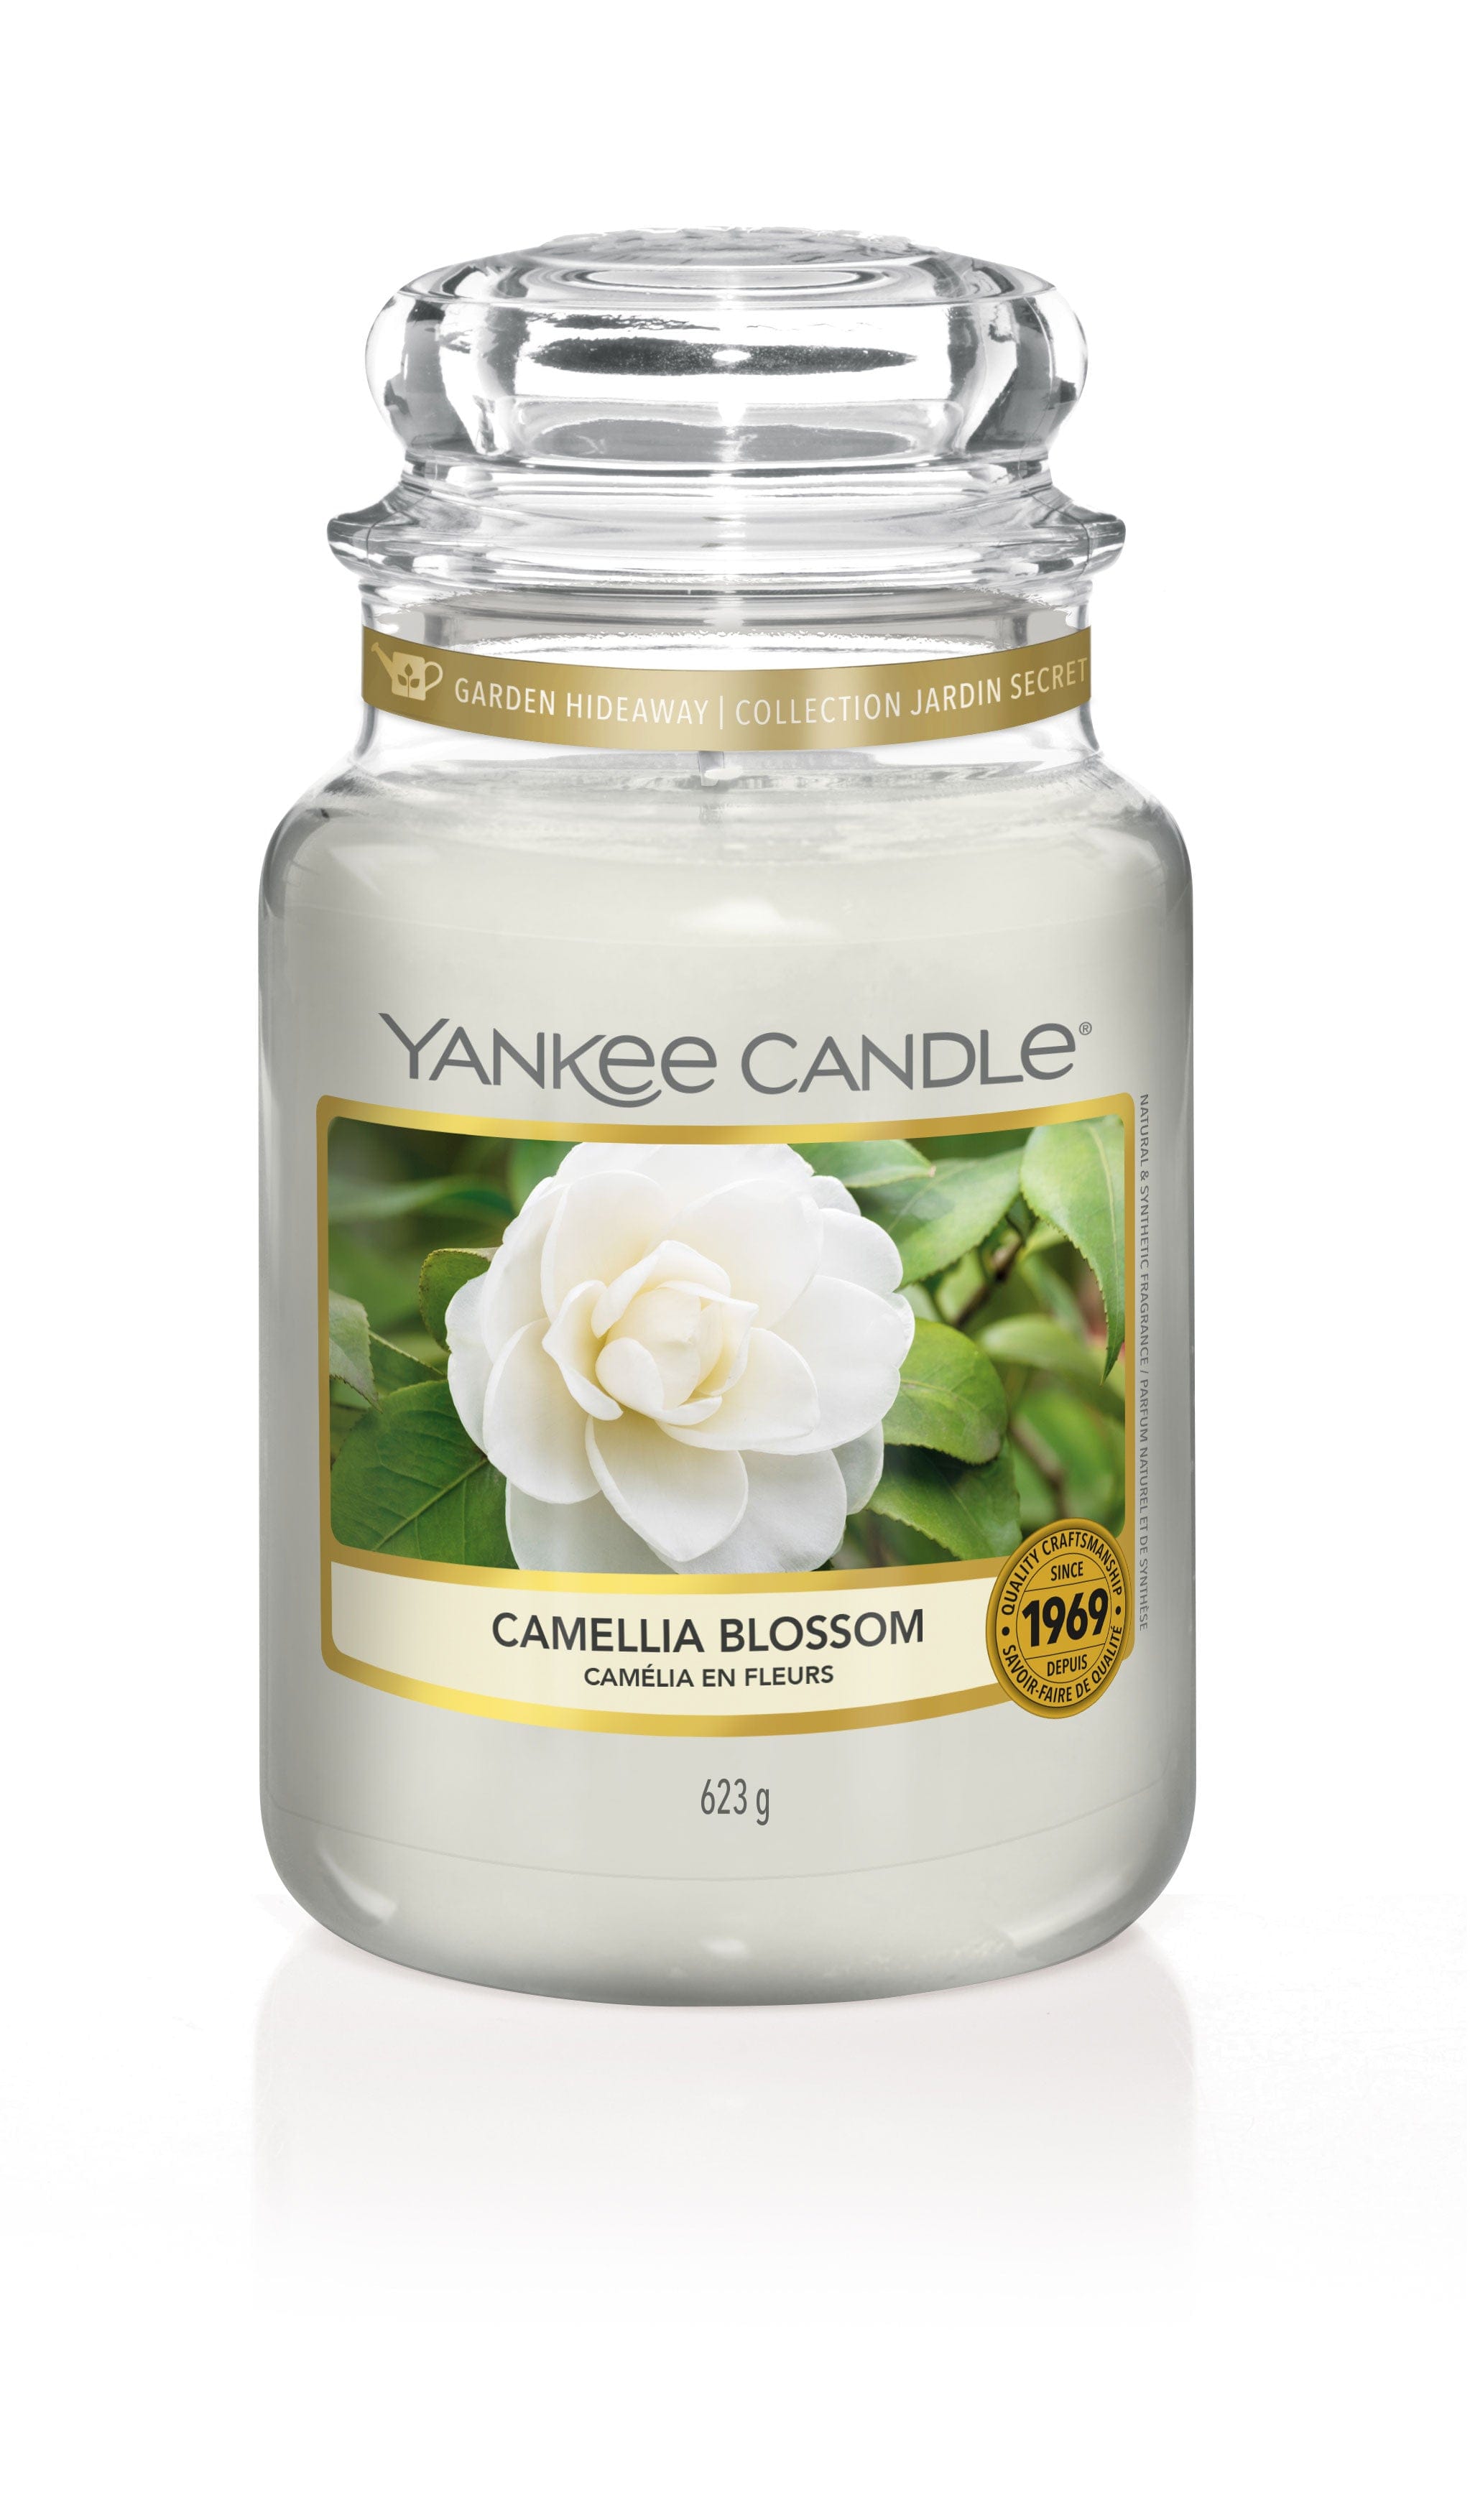 Yankee Candle Large Jar Candle Yankee Candle Large Jar - Camelia Blossom